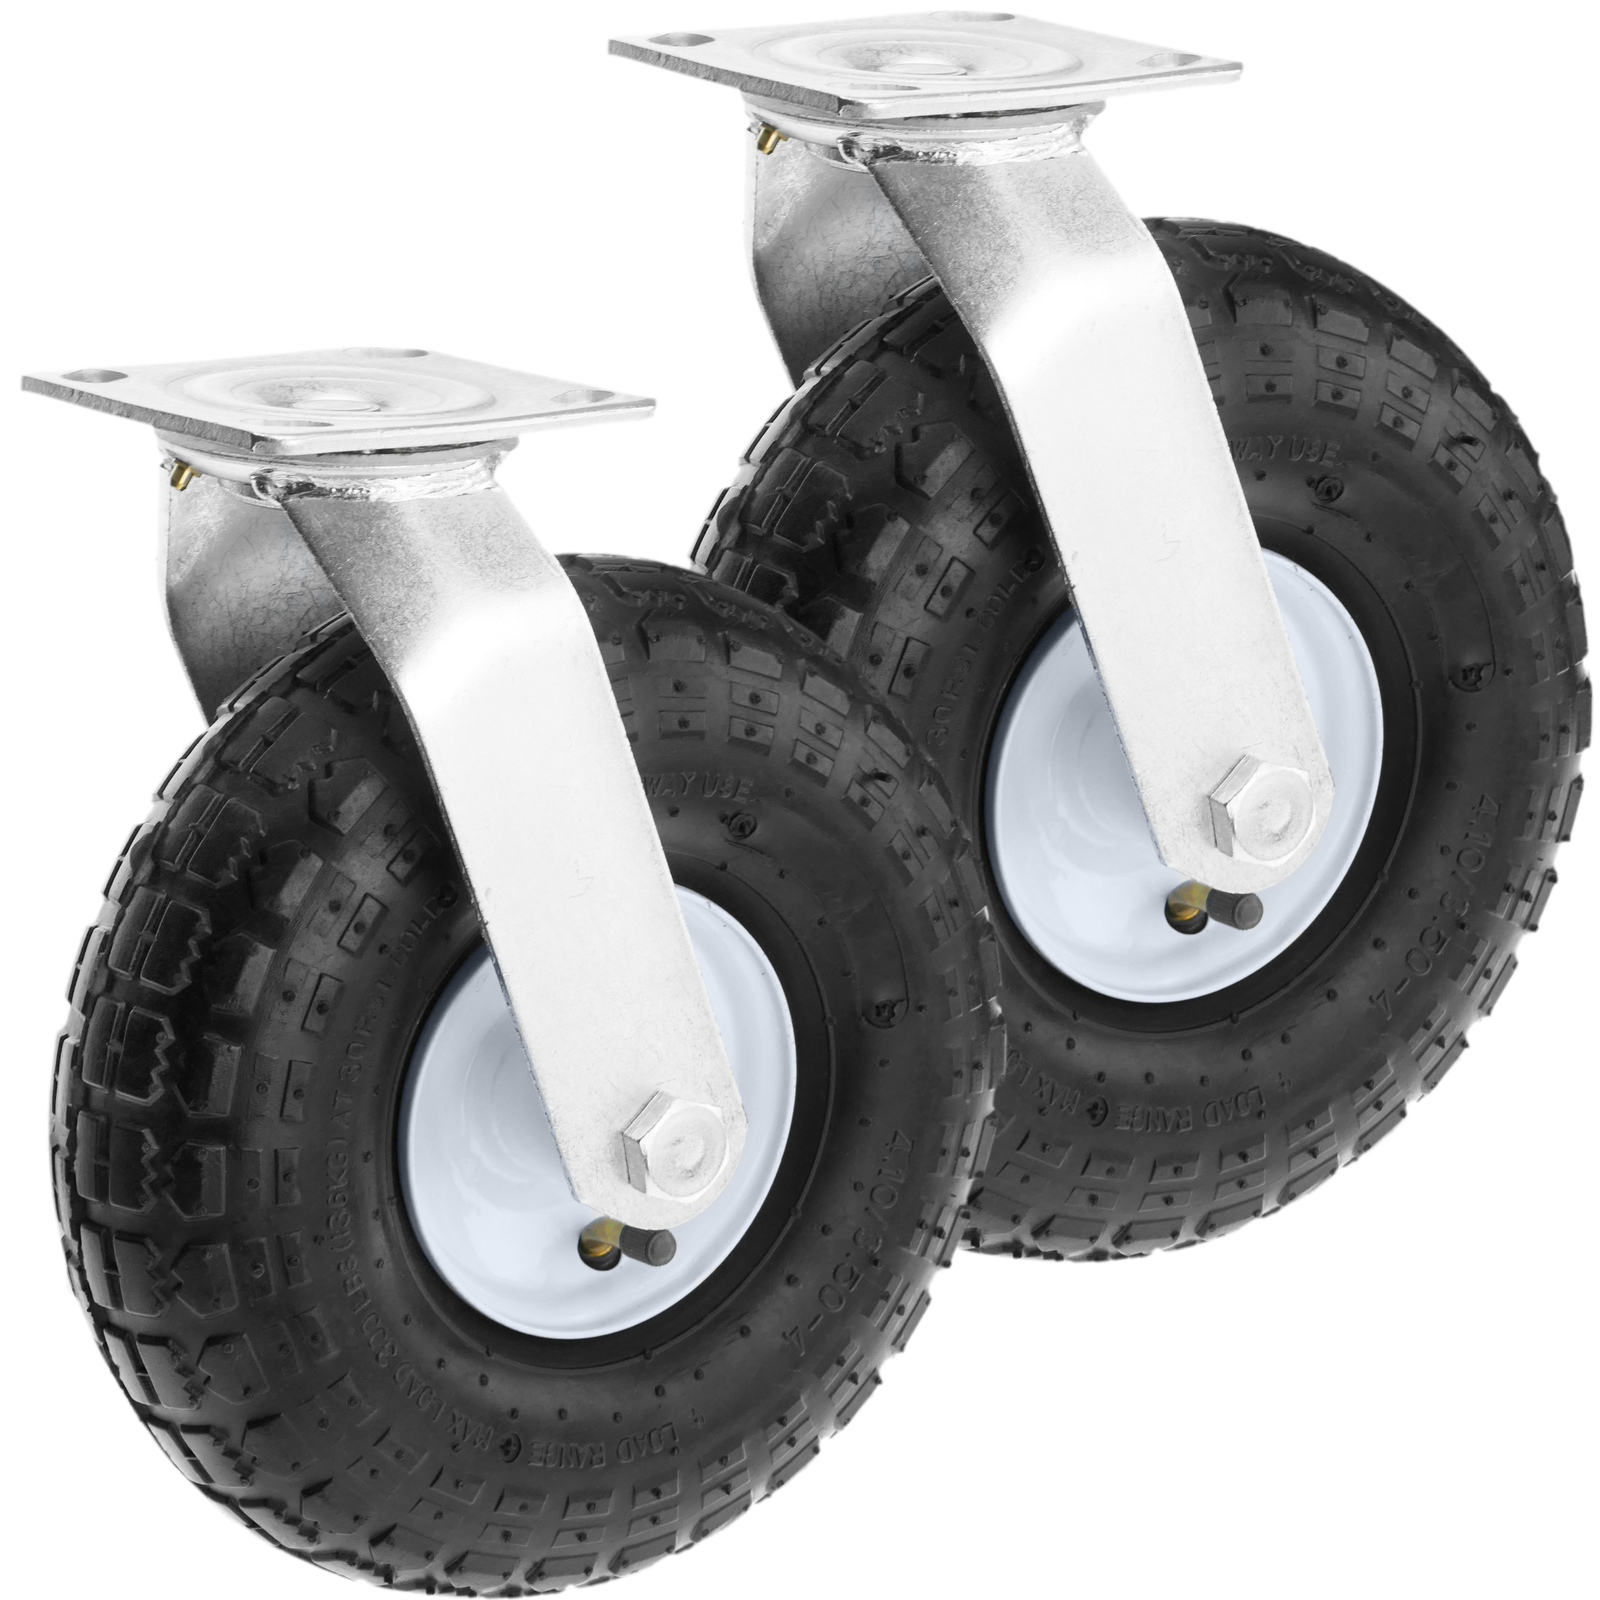 Carro con ruedas inflables para bombona de gas 6/13kg diámetro 220 mm